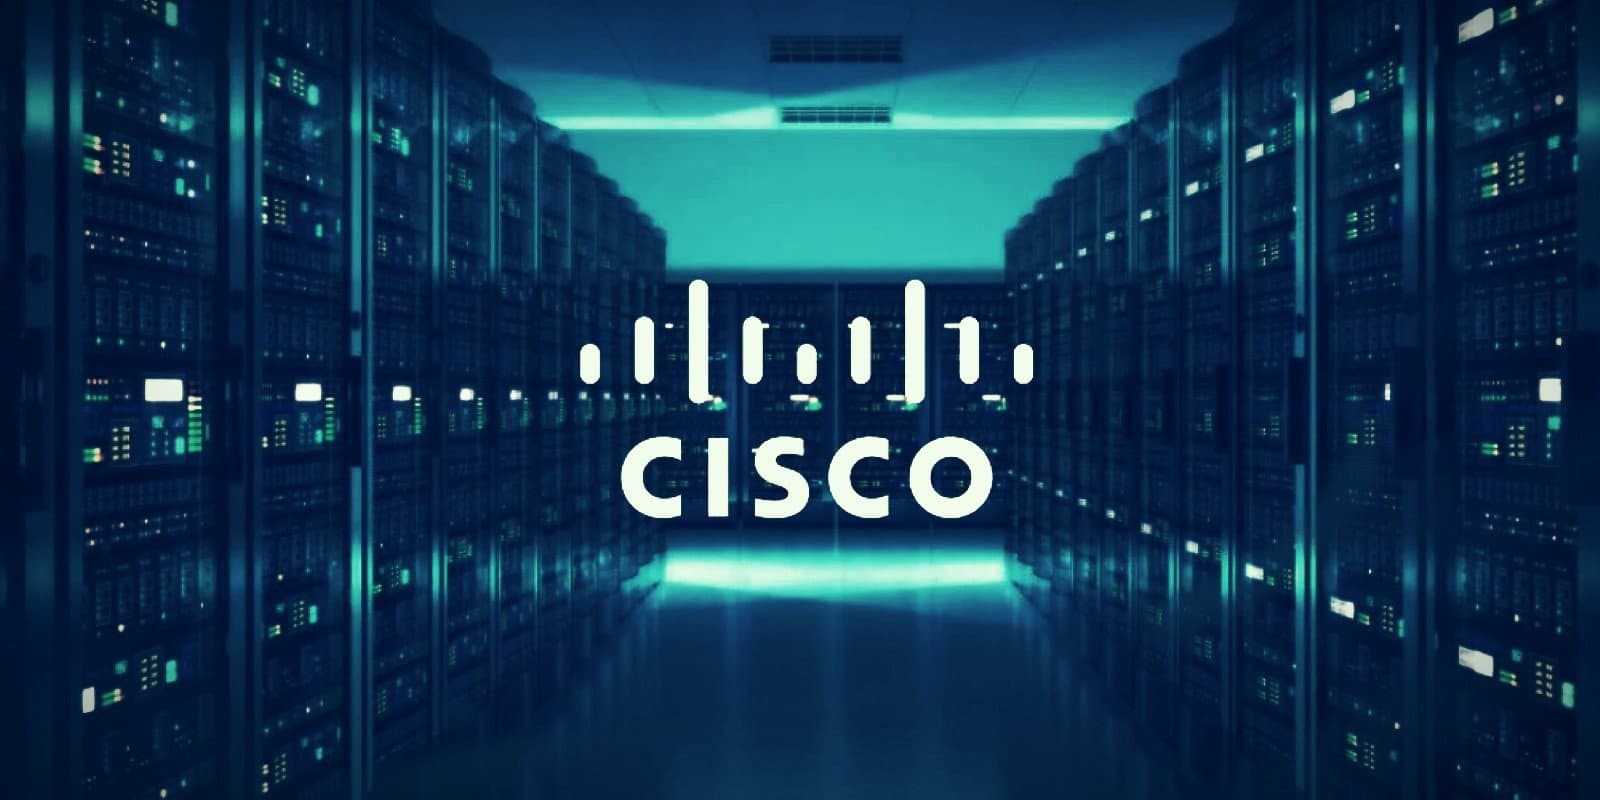 Perusahaan Teknologi Terkemuka Cisco Umumkan PHK Ribuan Karyawannya